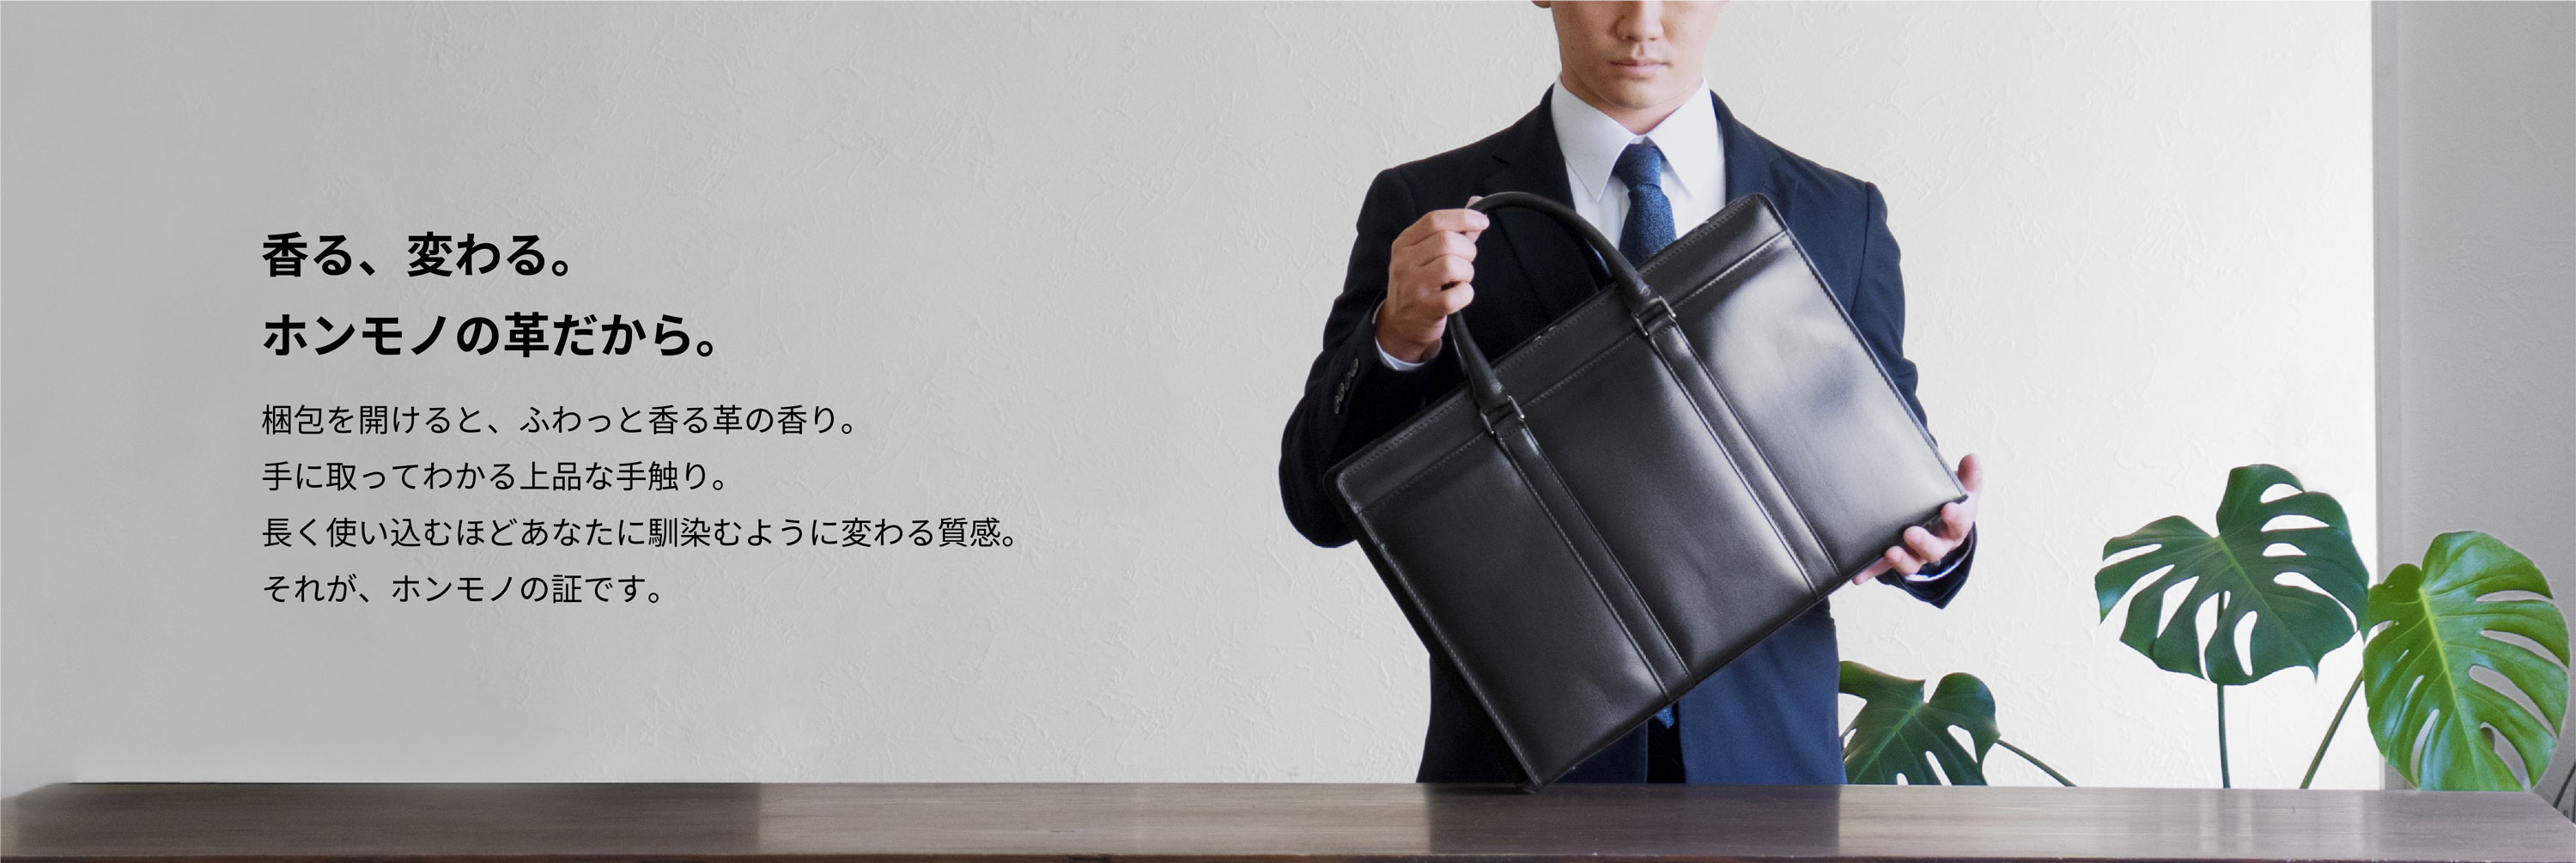 デザインから革の加工、仕上げに至るまで、すべての工程が日本国内で行われています。“オール日本”で作られたこのビジネスバッグには、日本の鞄作りの威信がかかっているといっても過言ではありません。